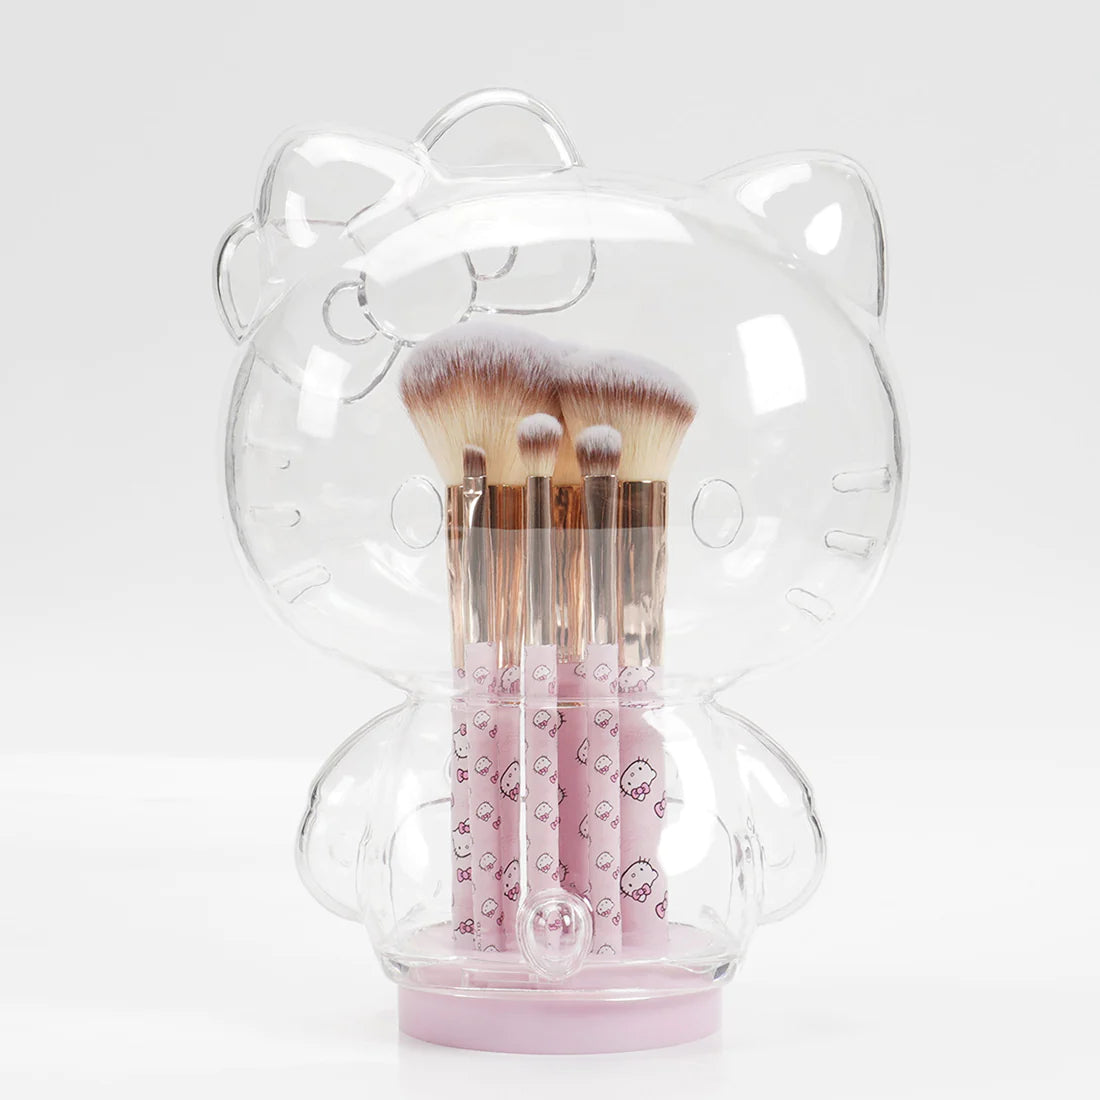 Impressions Vanity - Hello Kitty 6pc Brush Gift Set Pink